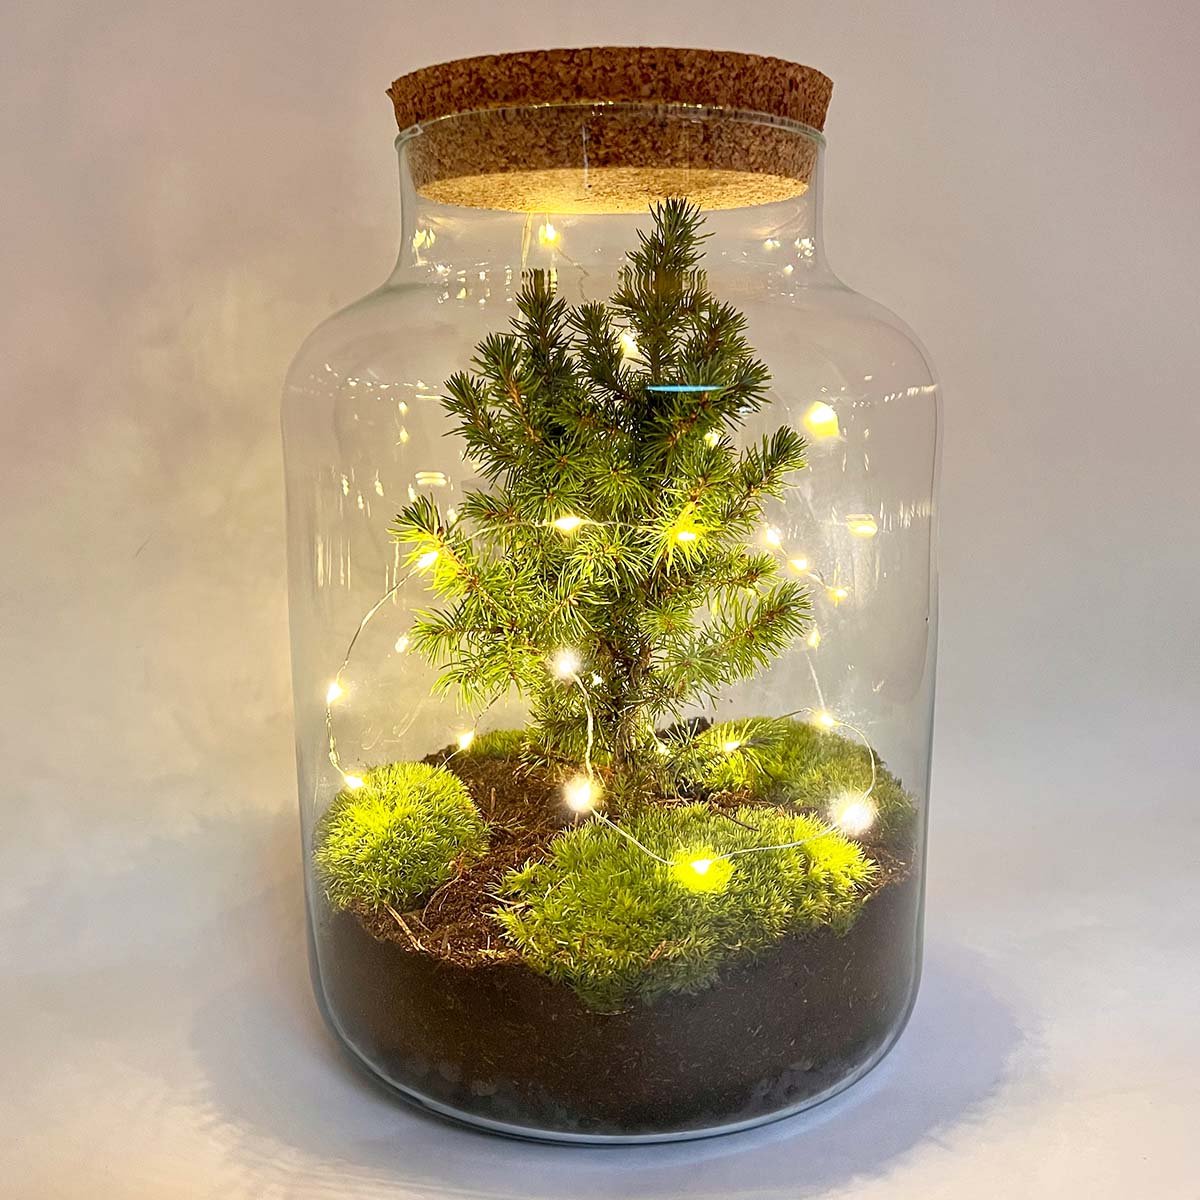 Milky Christmas - Planten terrarium met kerstboom en verlichting - ↑ 30 cm - Kerstcadeau - Kerstgeschenk - Creatief en duurzaam kerstpakket